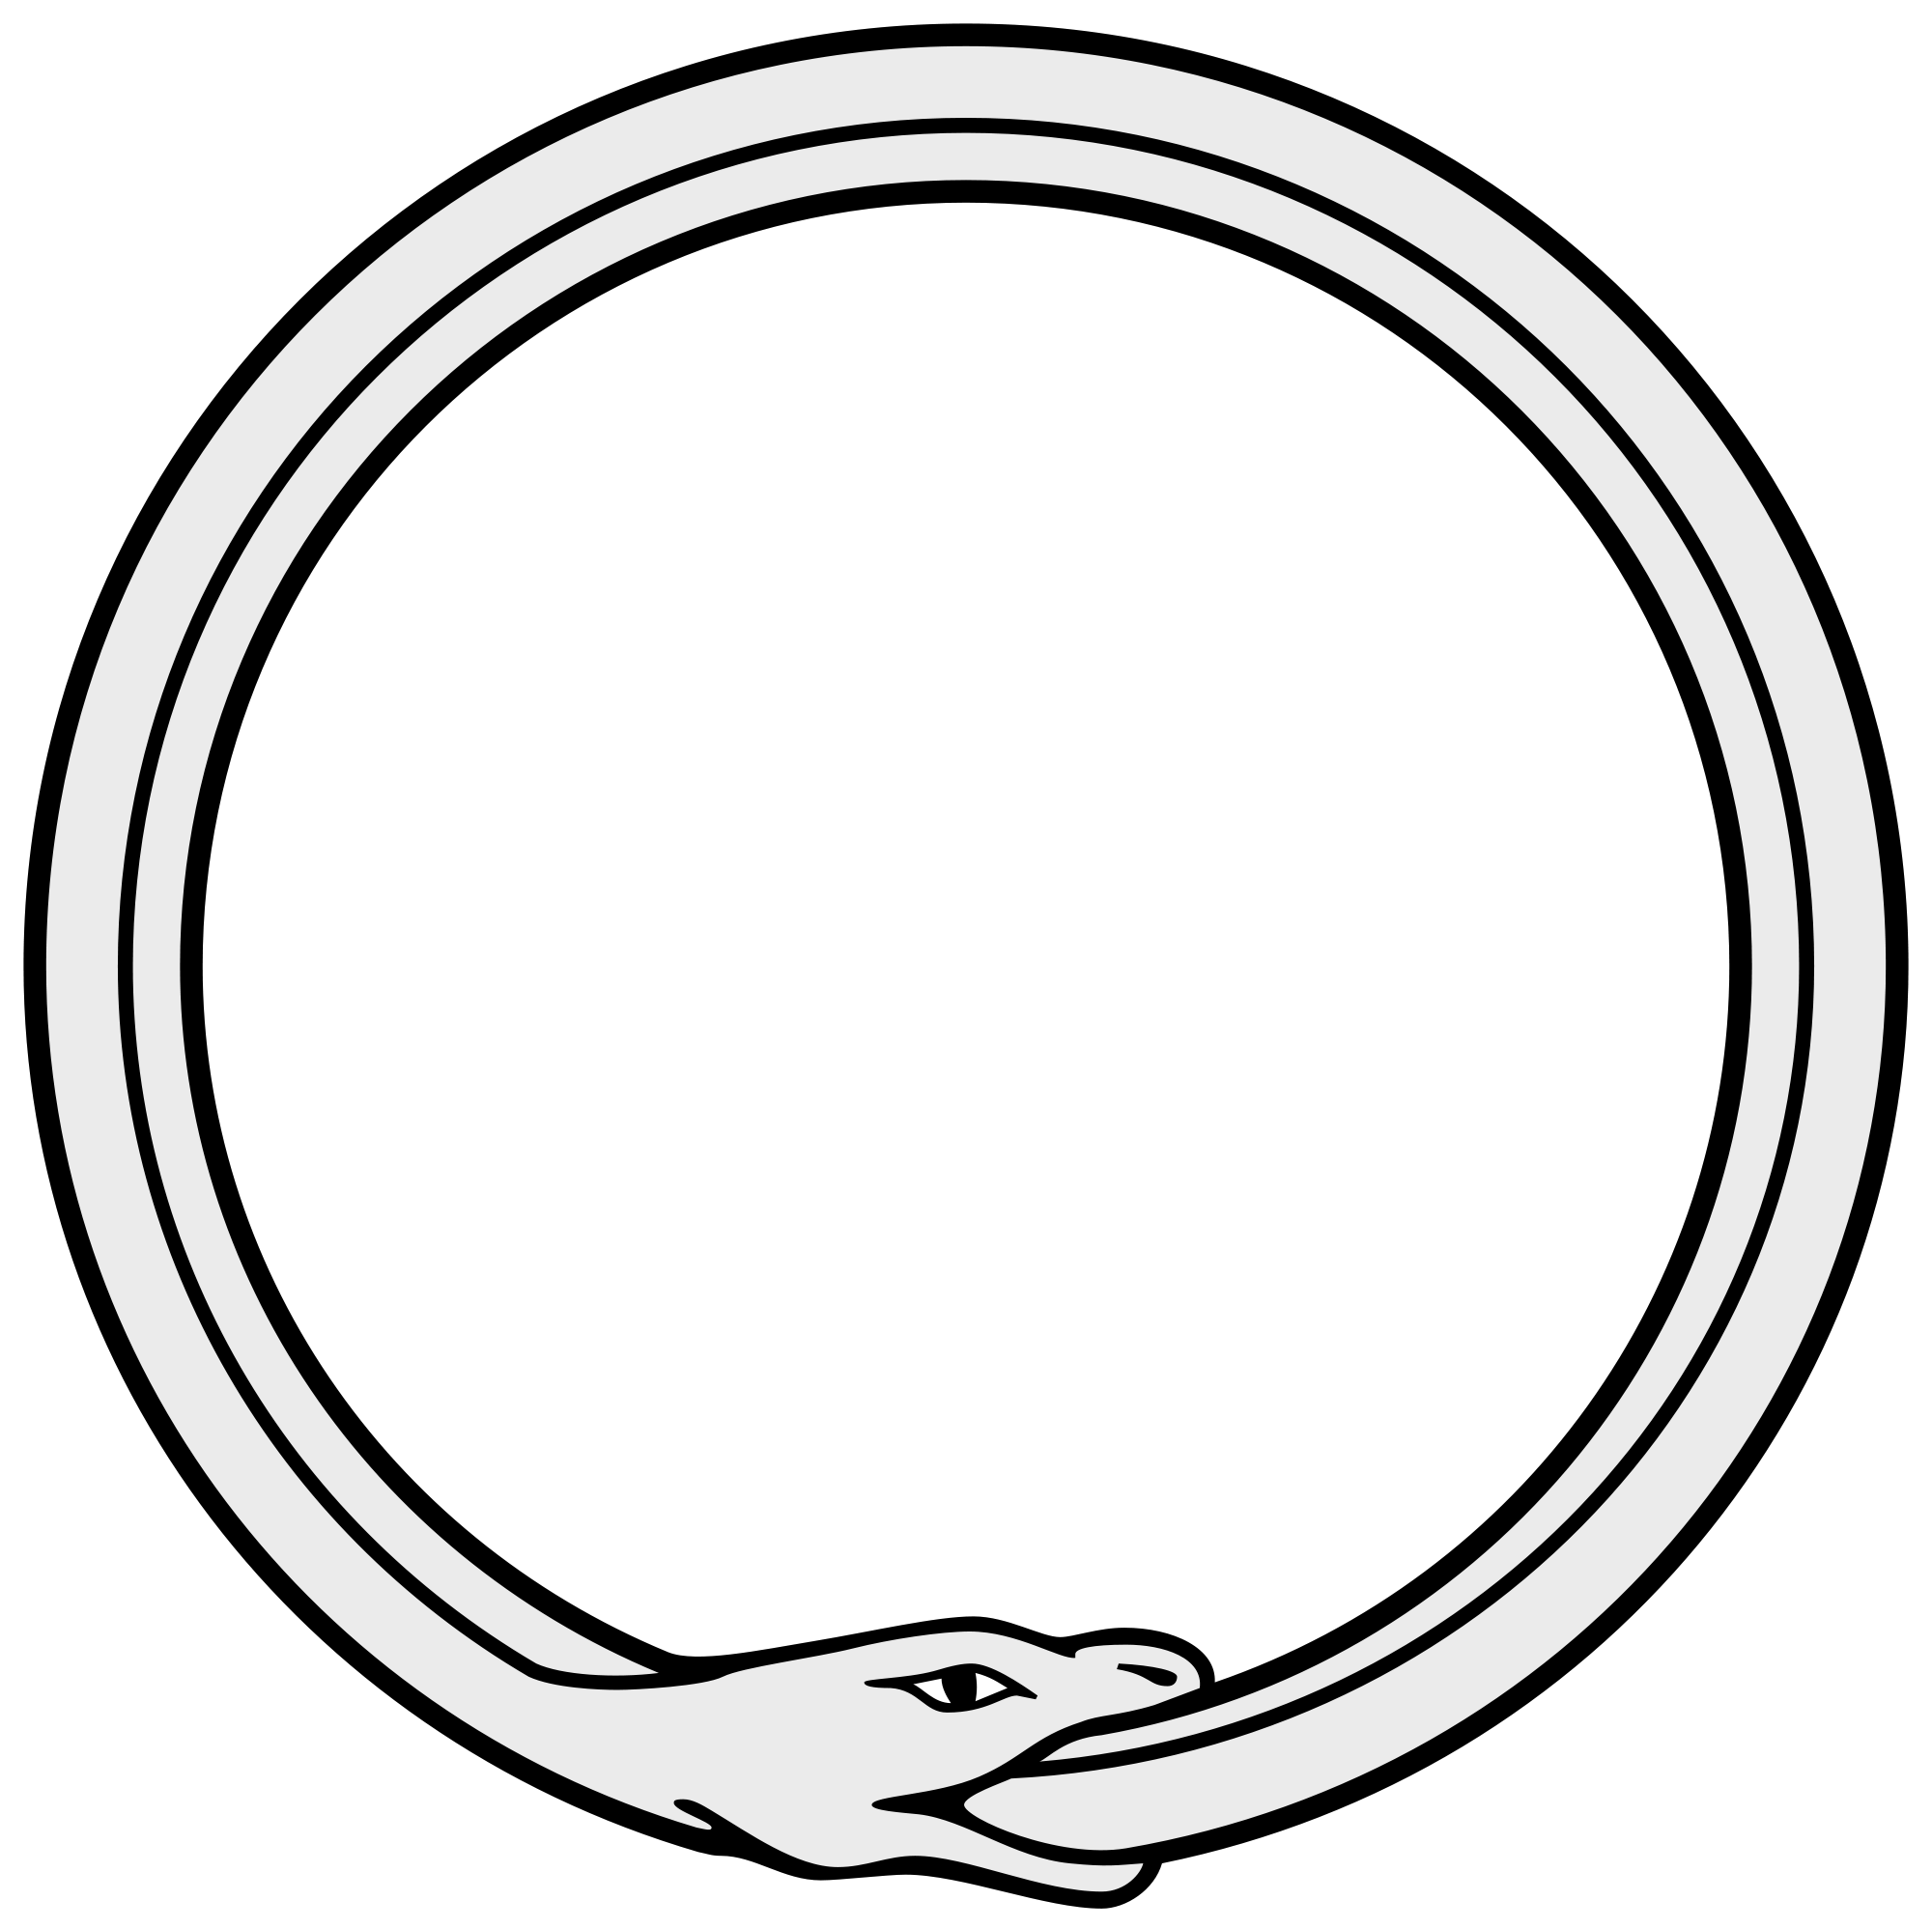 Ouroboros - Wikipedia